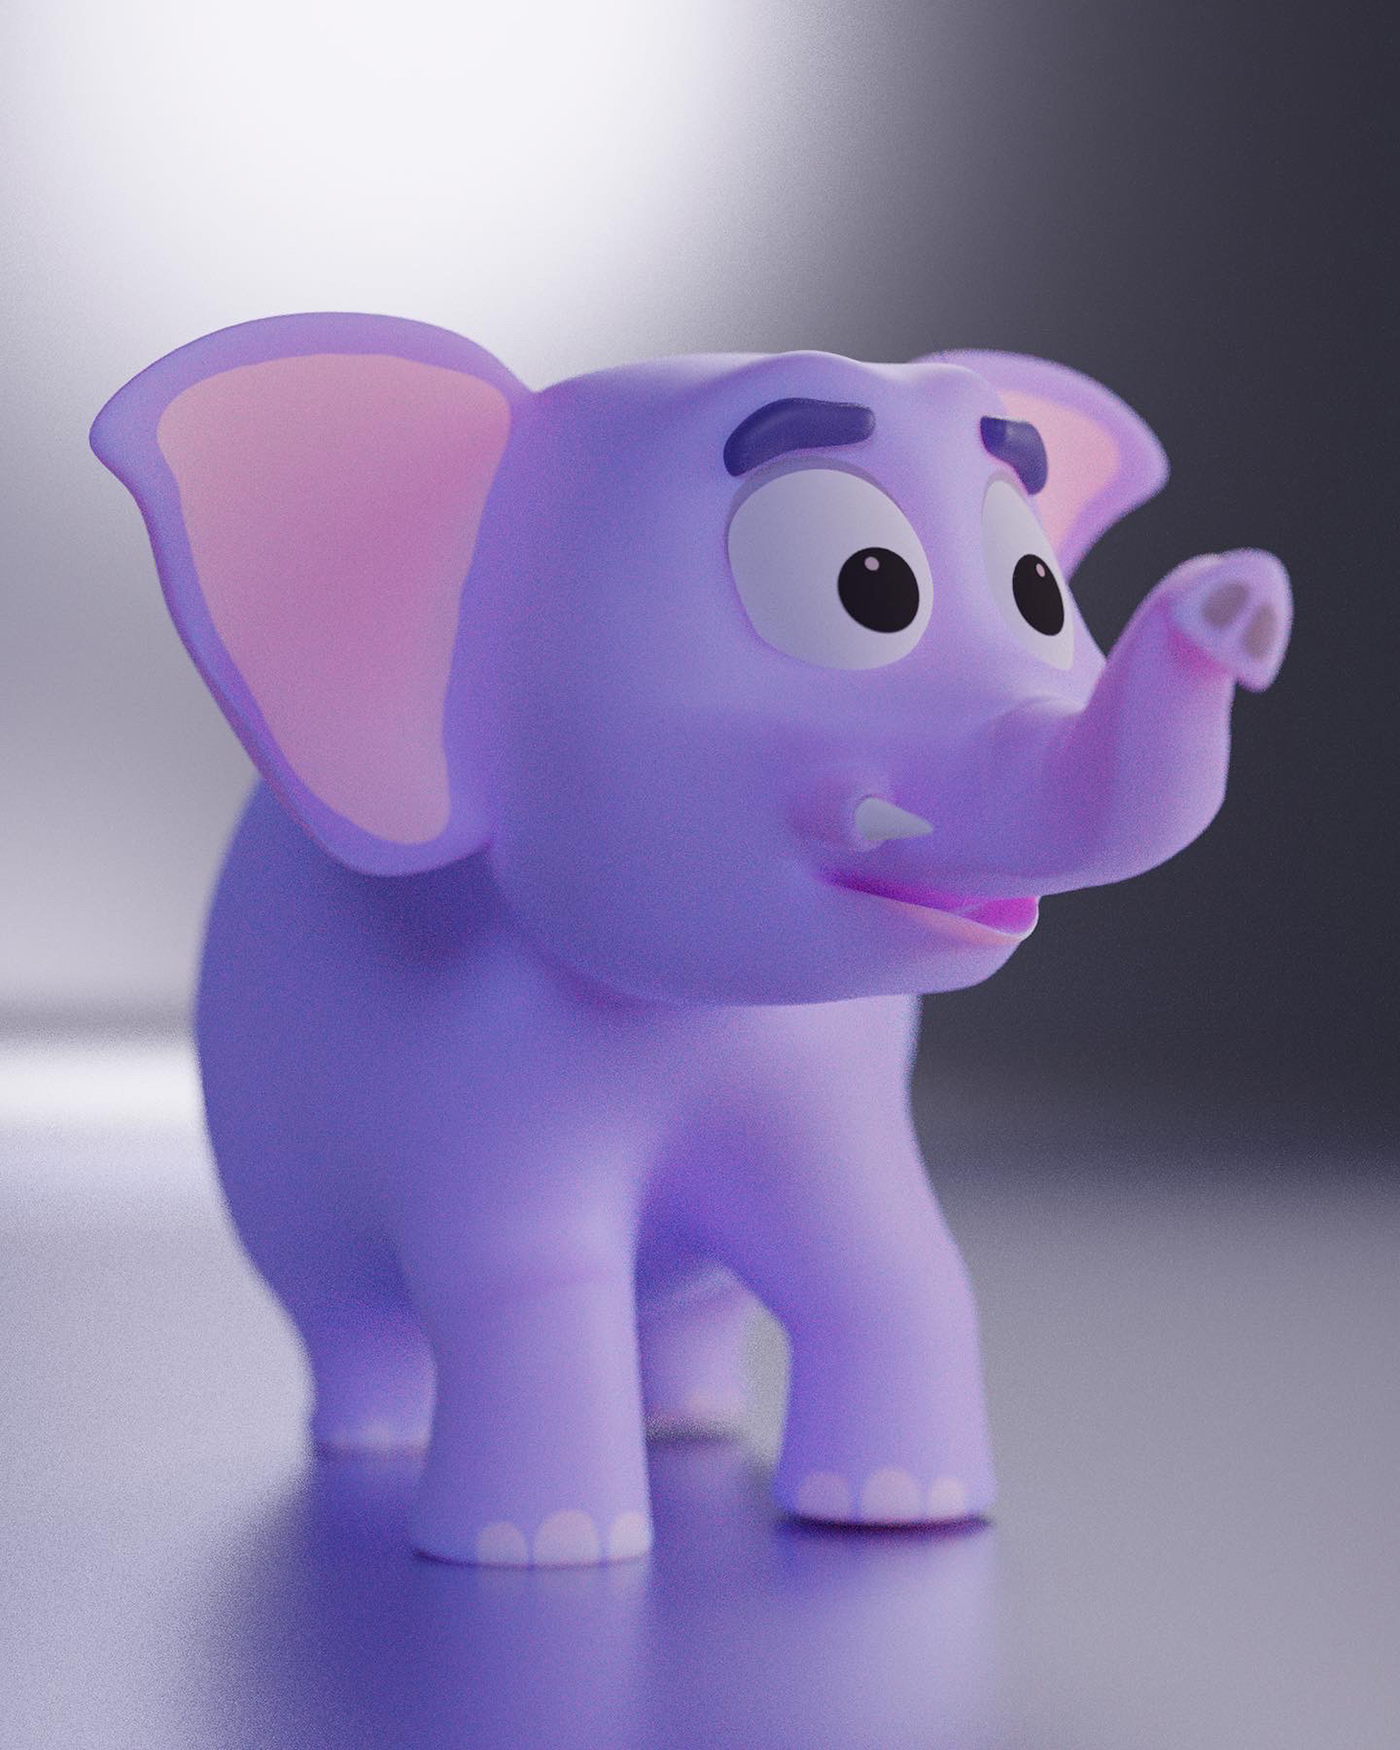 3D blender 3d cartoon Character elephant toy